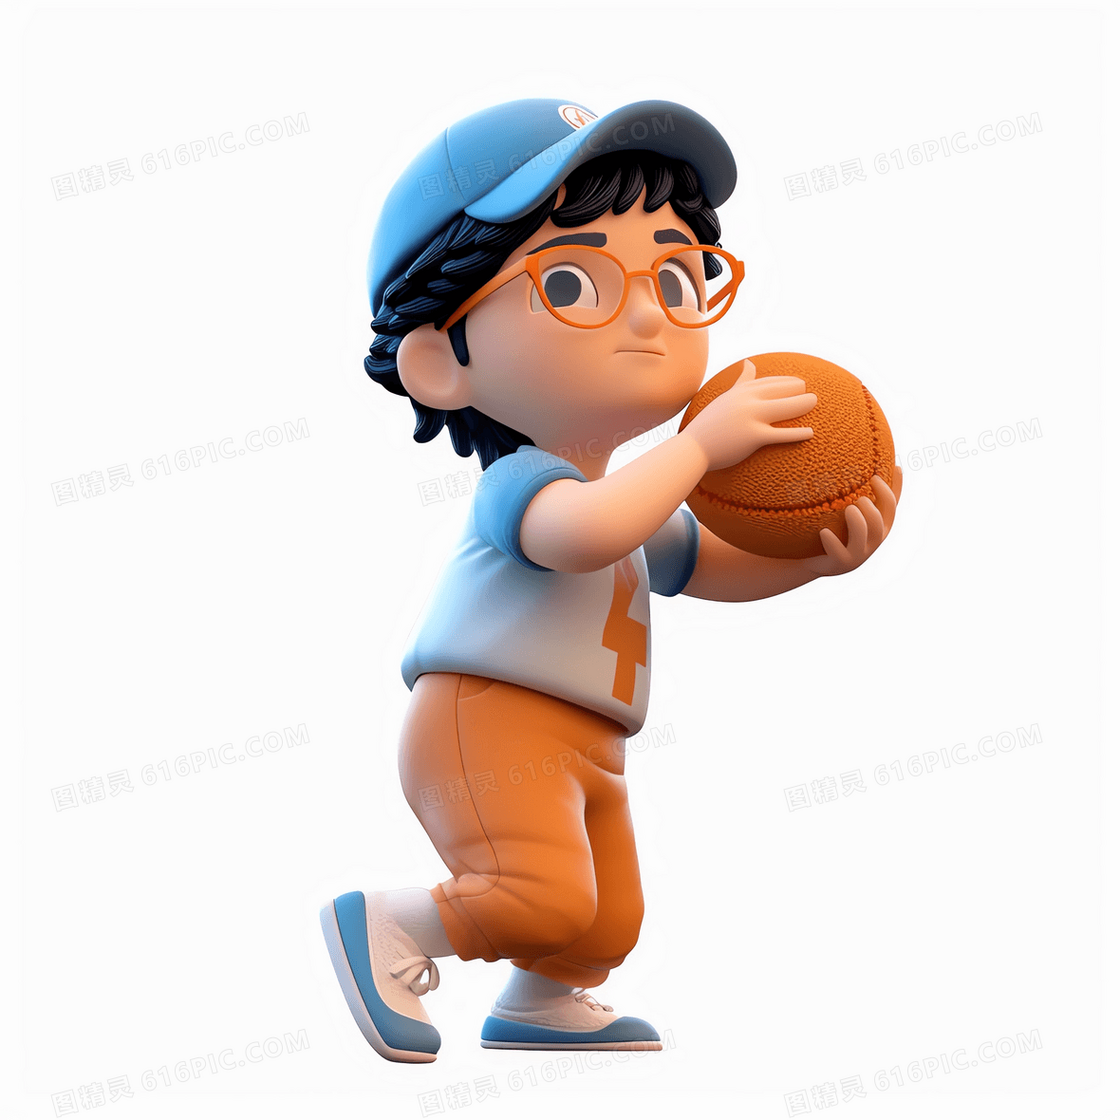 双手抱球做投掷动作的可爱男孩3D模型